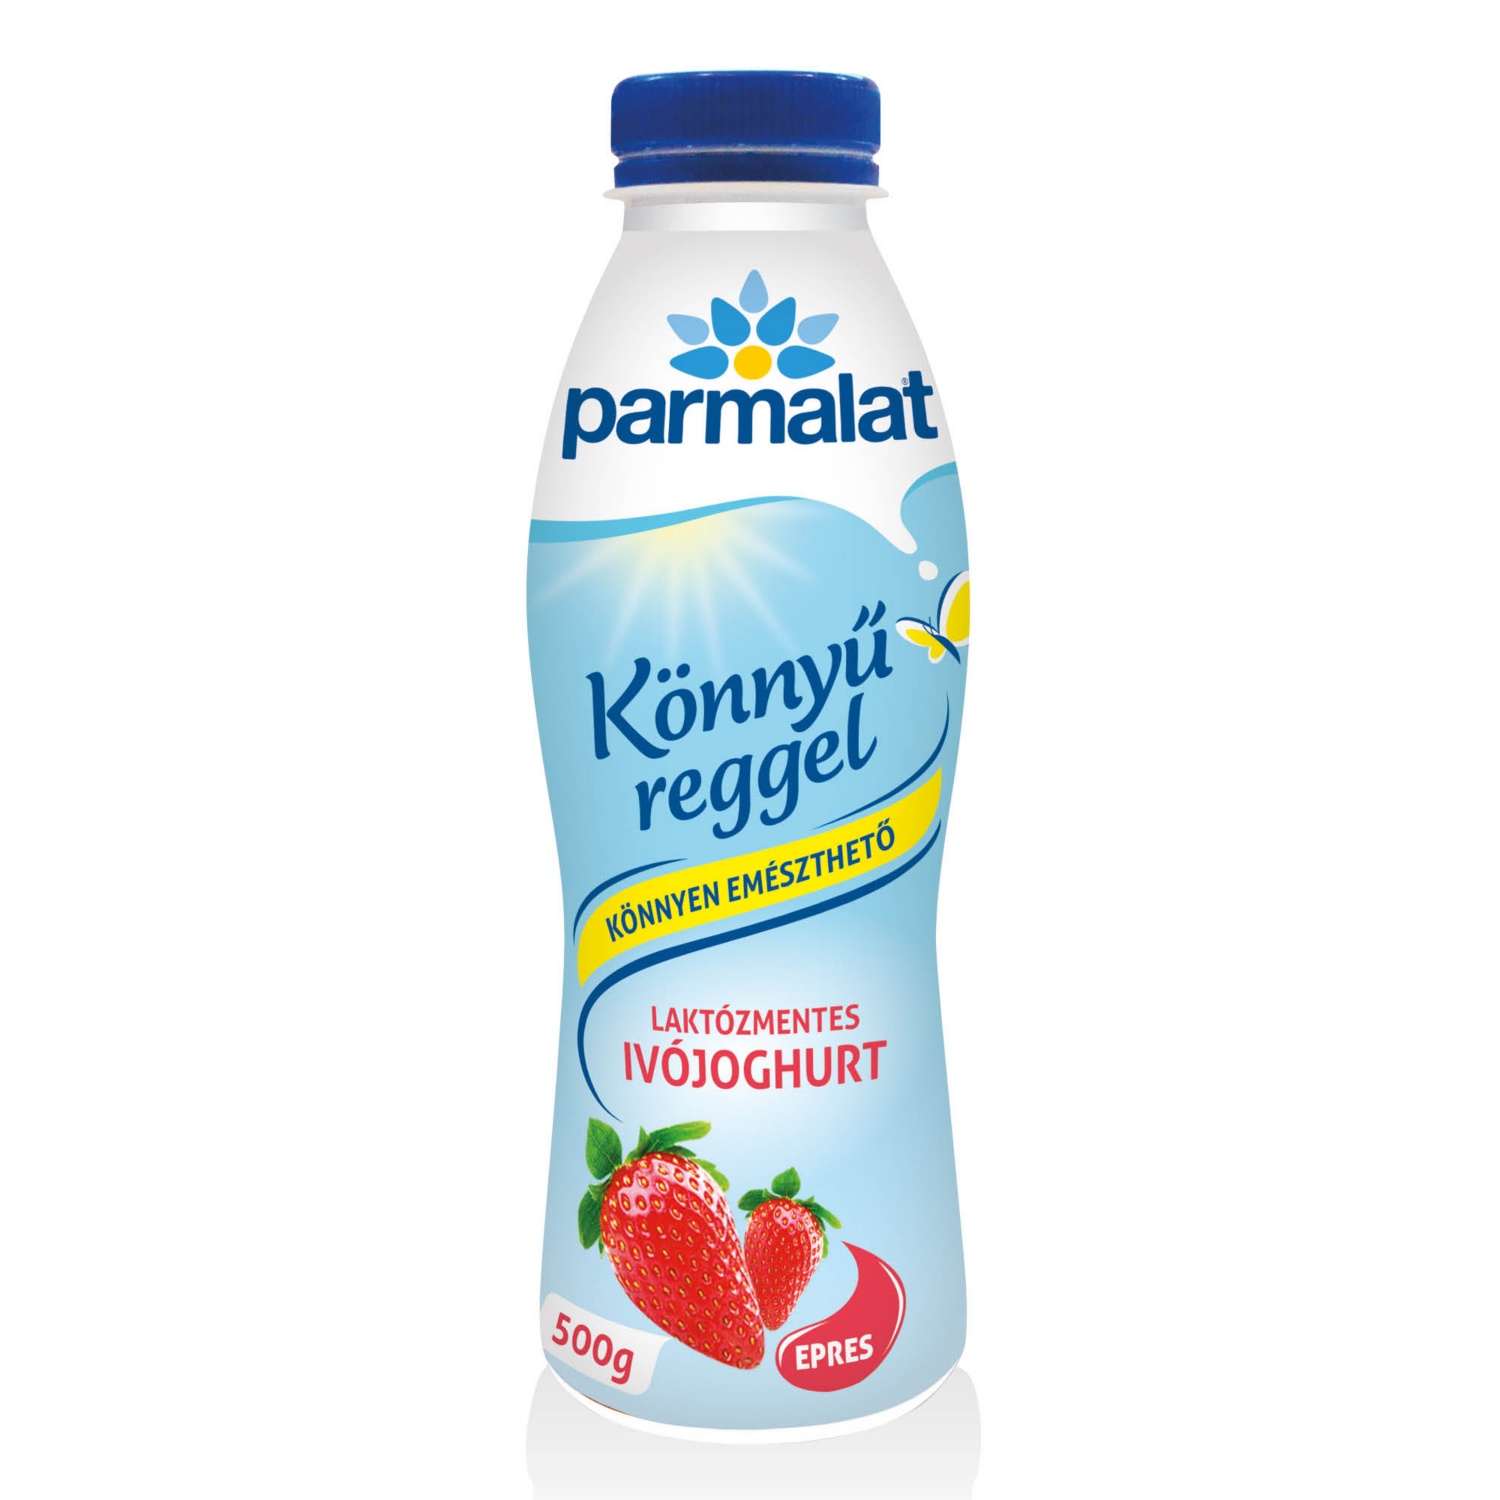 PARMALAT Laktózmentes ivójoghurt 500 g, epres